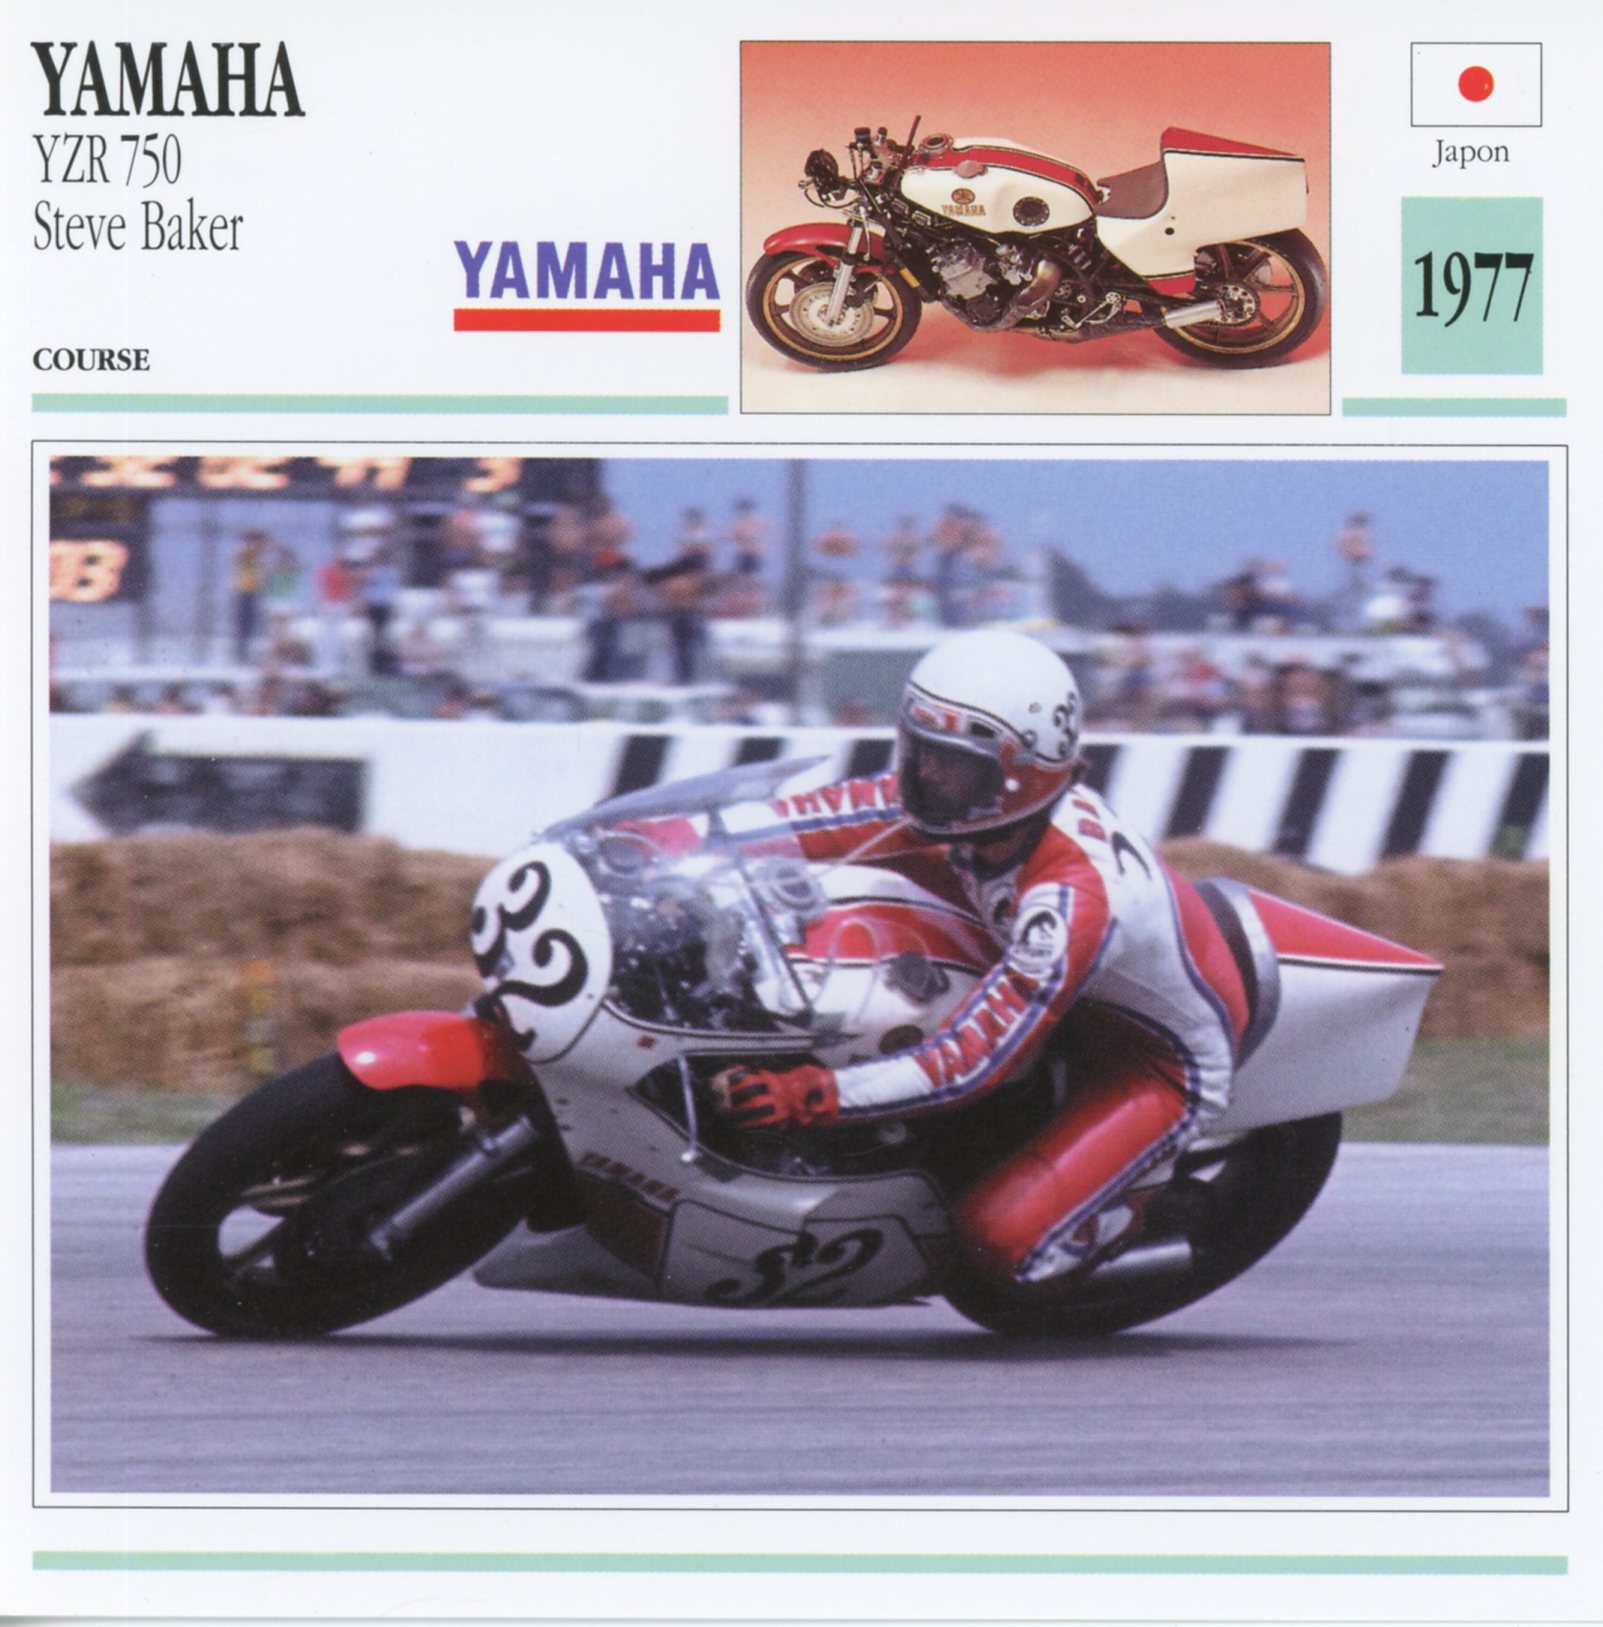 FICHE-MOTO-YAMAHA-YZR-750-STEVE-BAKER-1977-LEMASTERBROCKERS-littérature-brochure